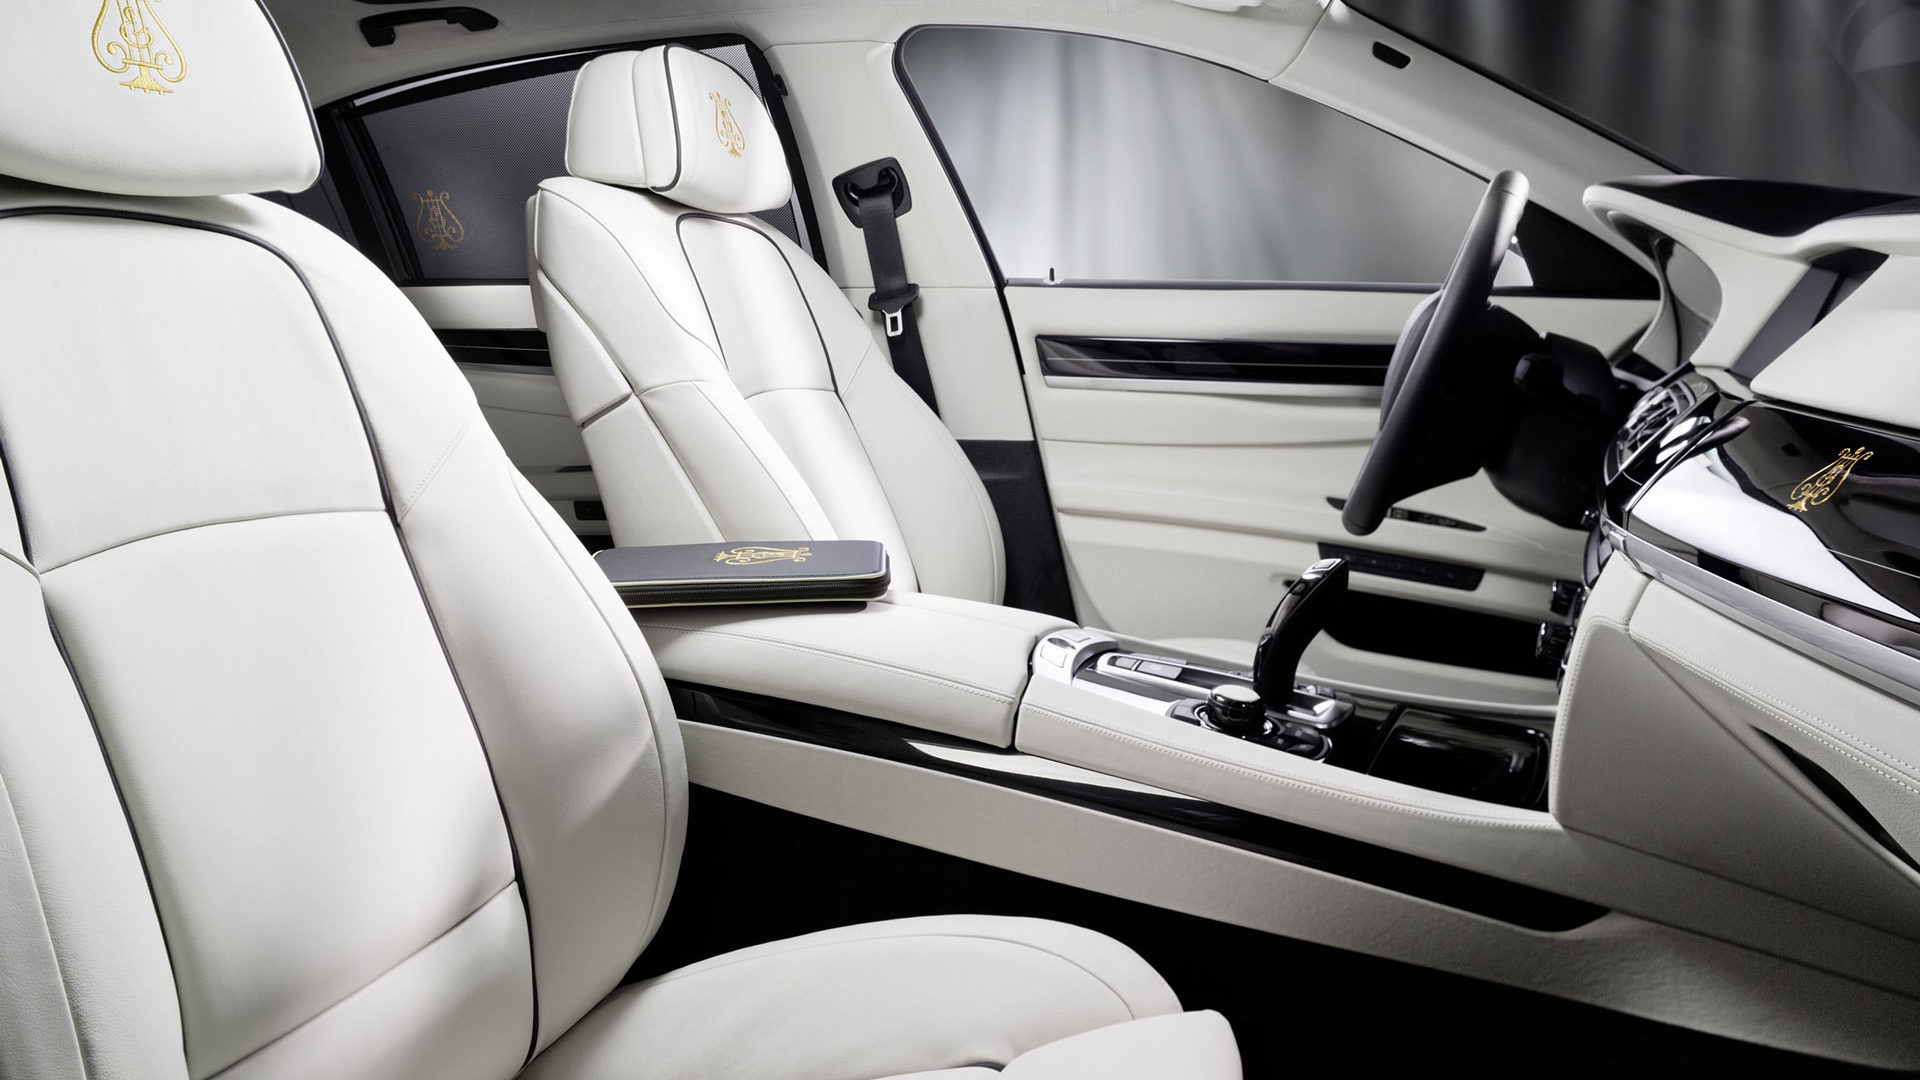 نمای شاهکار از دکوراسیون داخلی خودروی لوکس با تم سفید و مشکی 